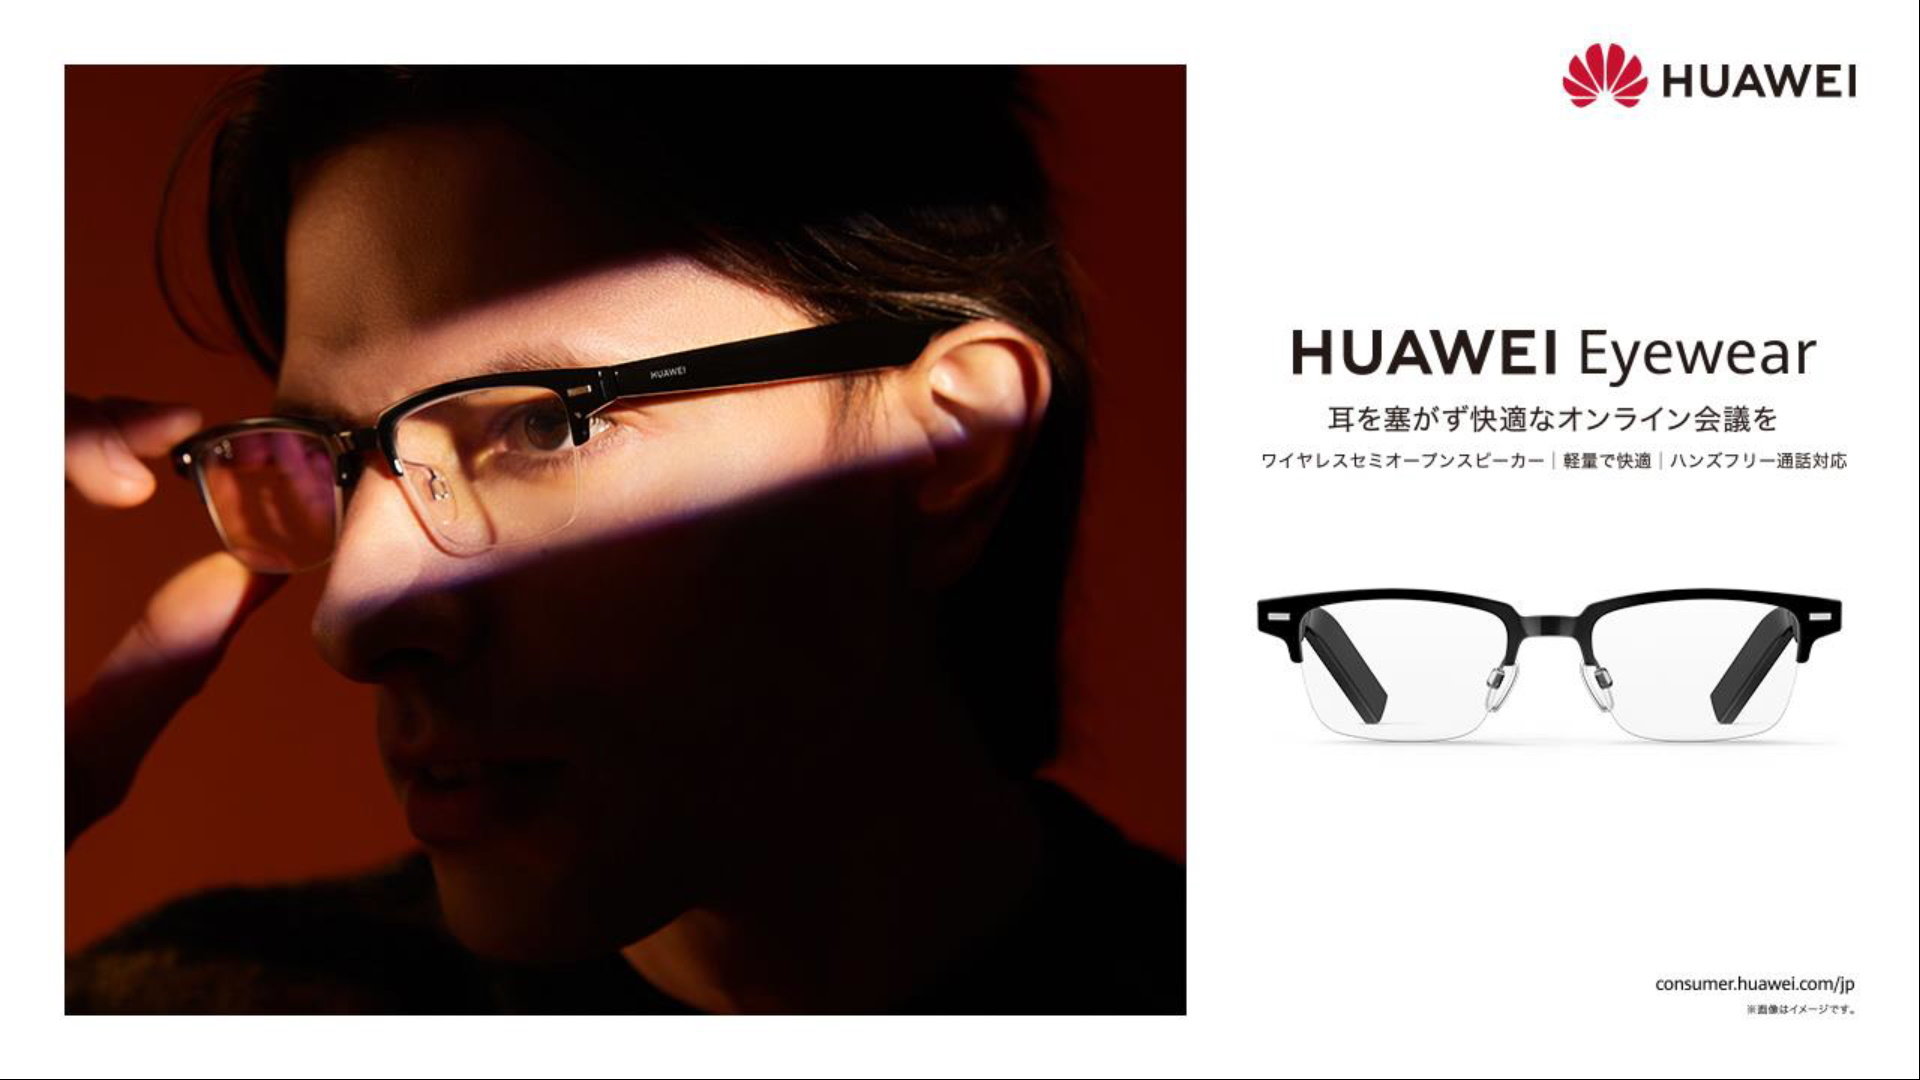 HUAWEI Eyewear ウェリントン型ハーフリム Bluetoothワイヤレス